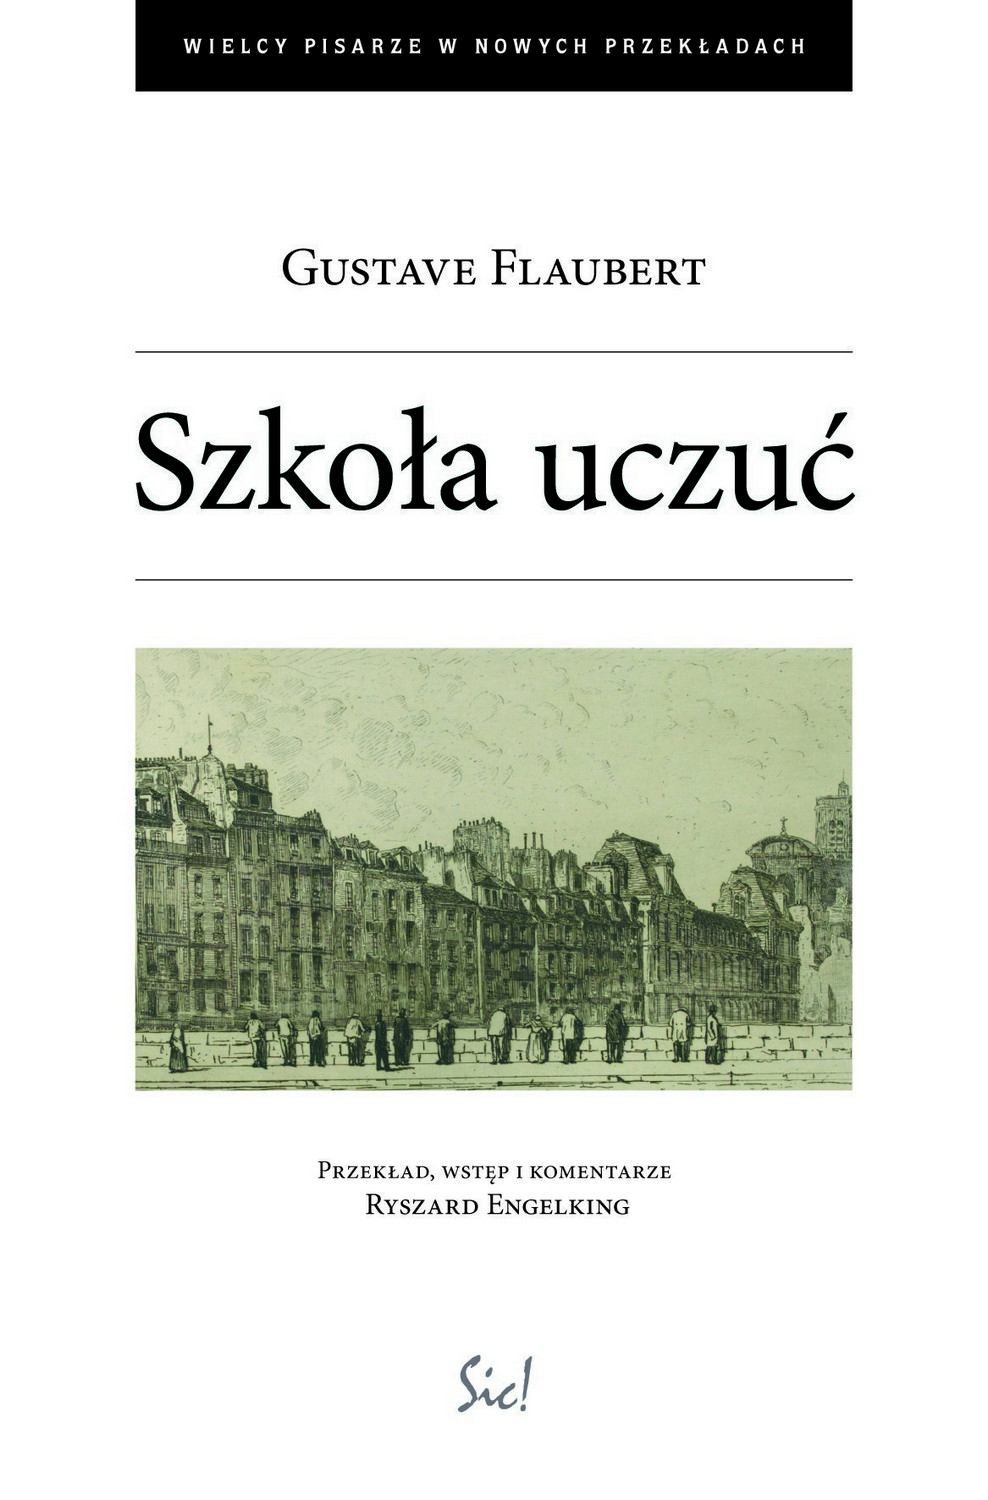 Gustave Flaubert, „Szkoła uczuć” w przekładzie Ryszarda Engelkinga – okładka (źródło: materiały prasowe)